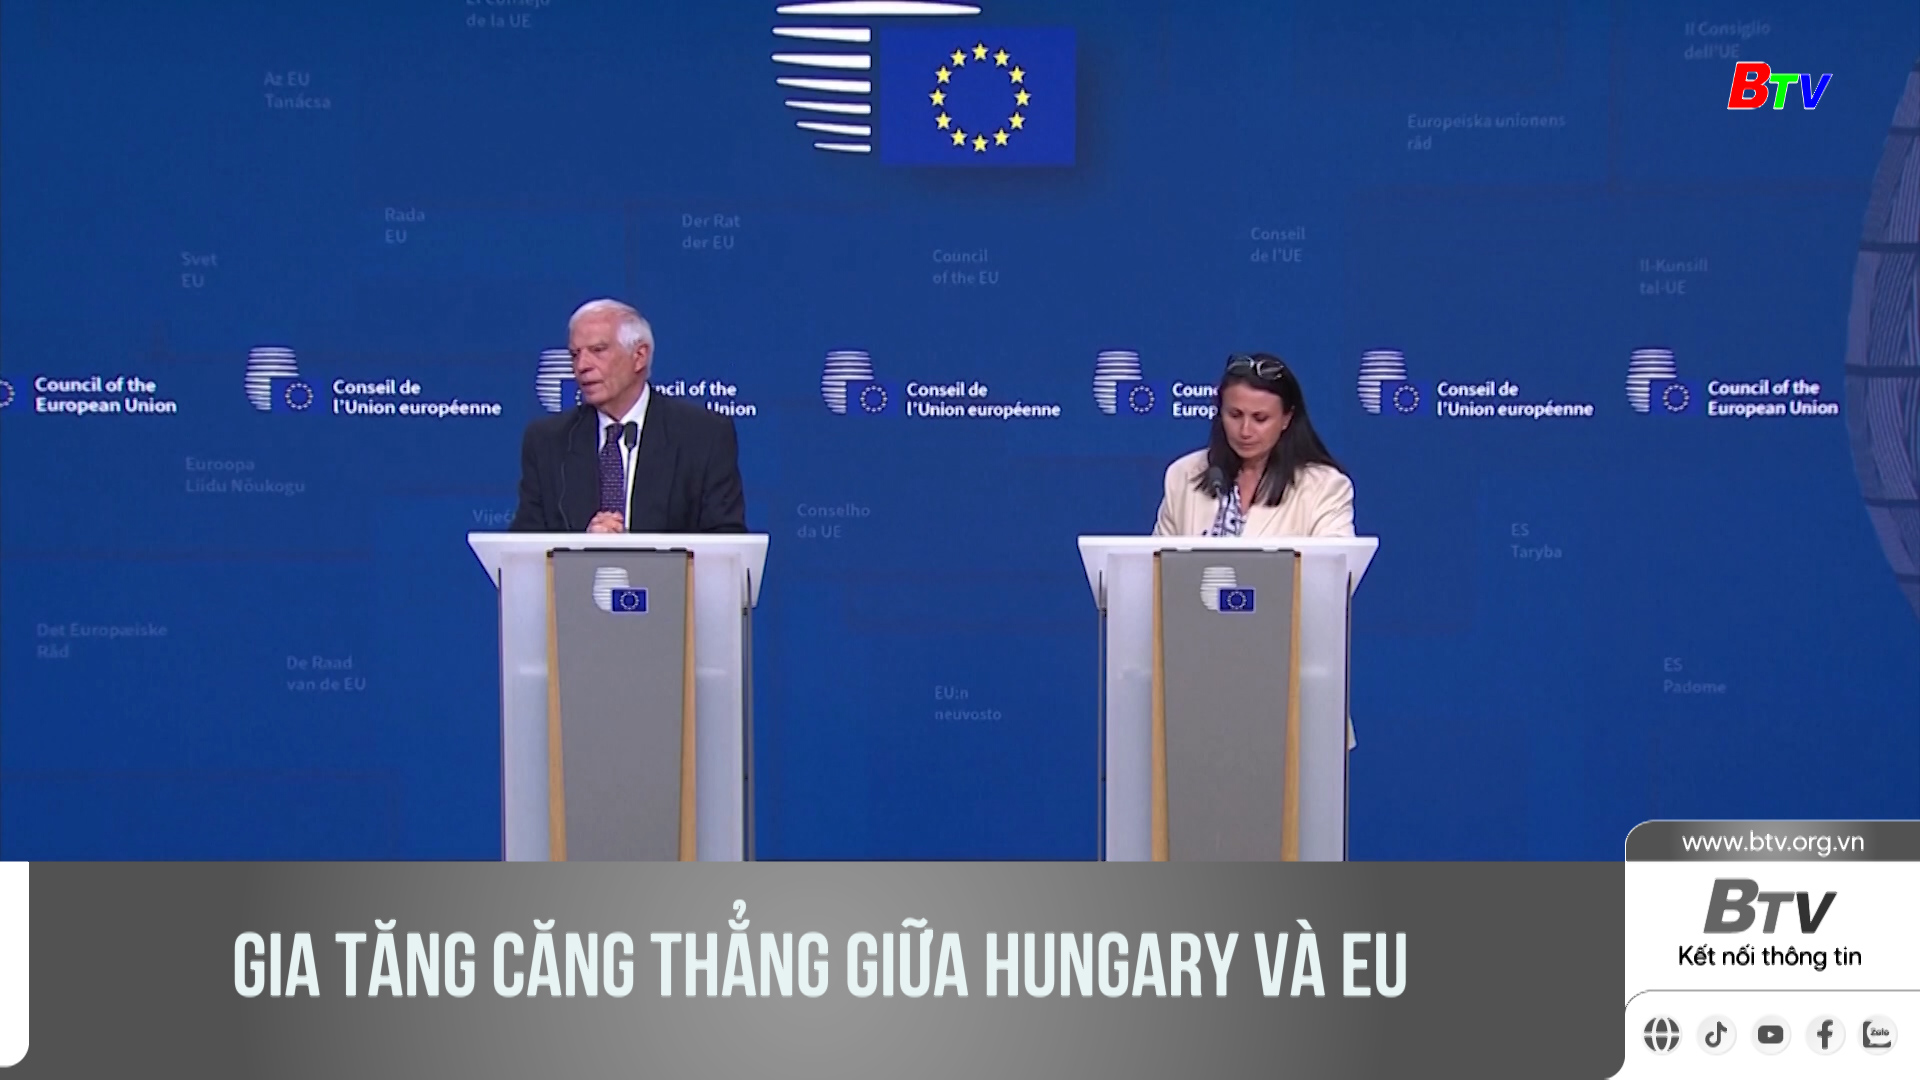 Gia tăng căng thẳng giữa Hungary và EU